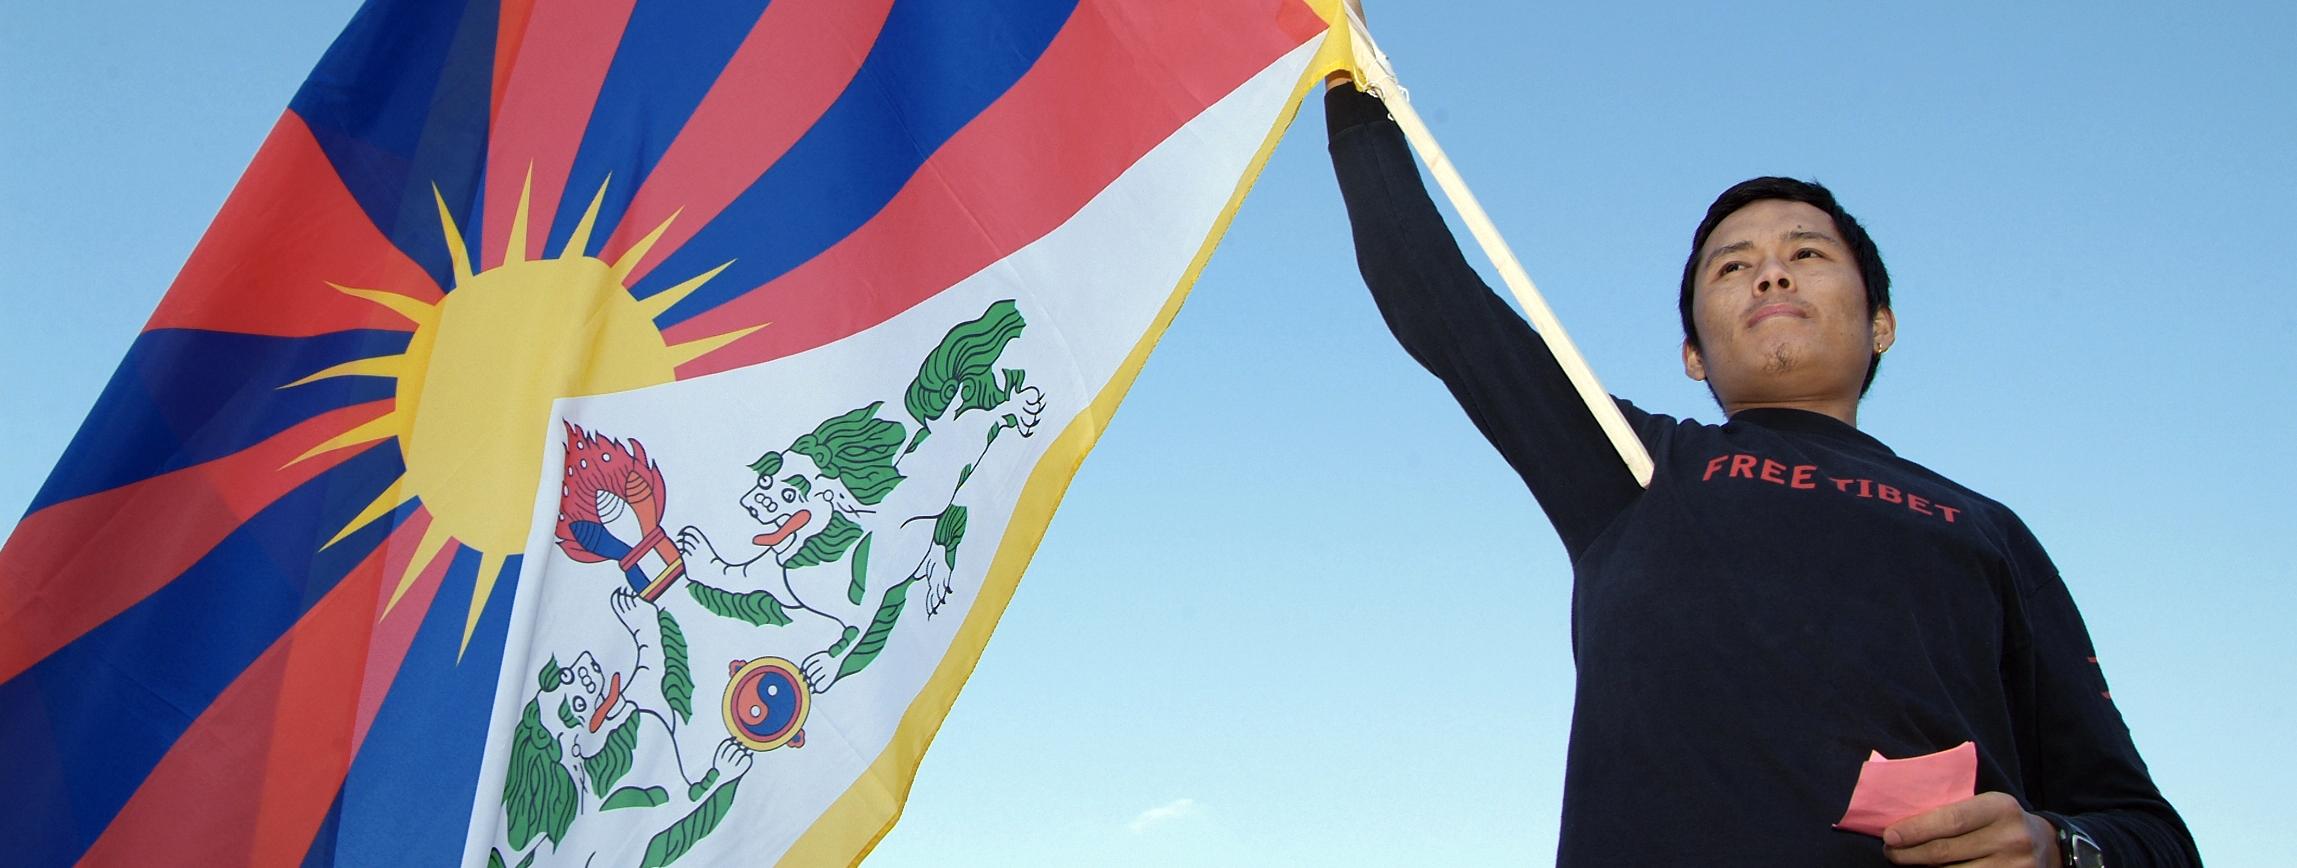 Ein schwarz gekleideter Mann schwenkt die Flagge Tibets. Auf der Mitte der Falgge ist eine Sonne; von ihr gehen sechs rote und sechs blaue Strahlen ab; vor der Sonne ist ein schneebedeckter Berg symbolisch dargestellt; davor sind zwei Seelöwen und ein symbolisches Juwel dargestellt. Die gesamte Flagge ist goldgelb umrandet.